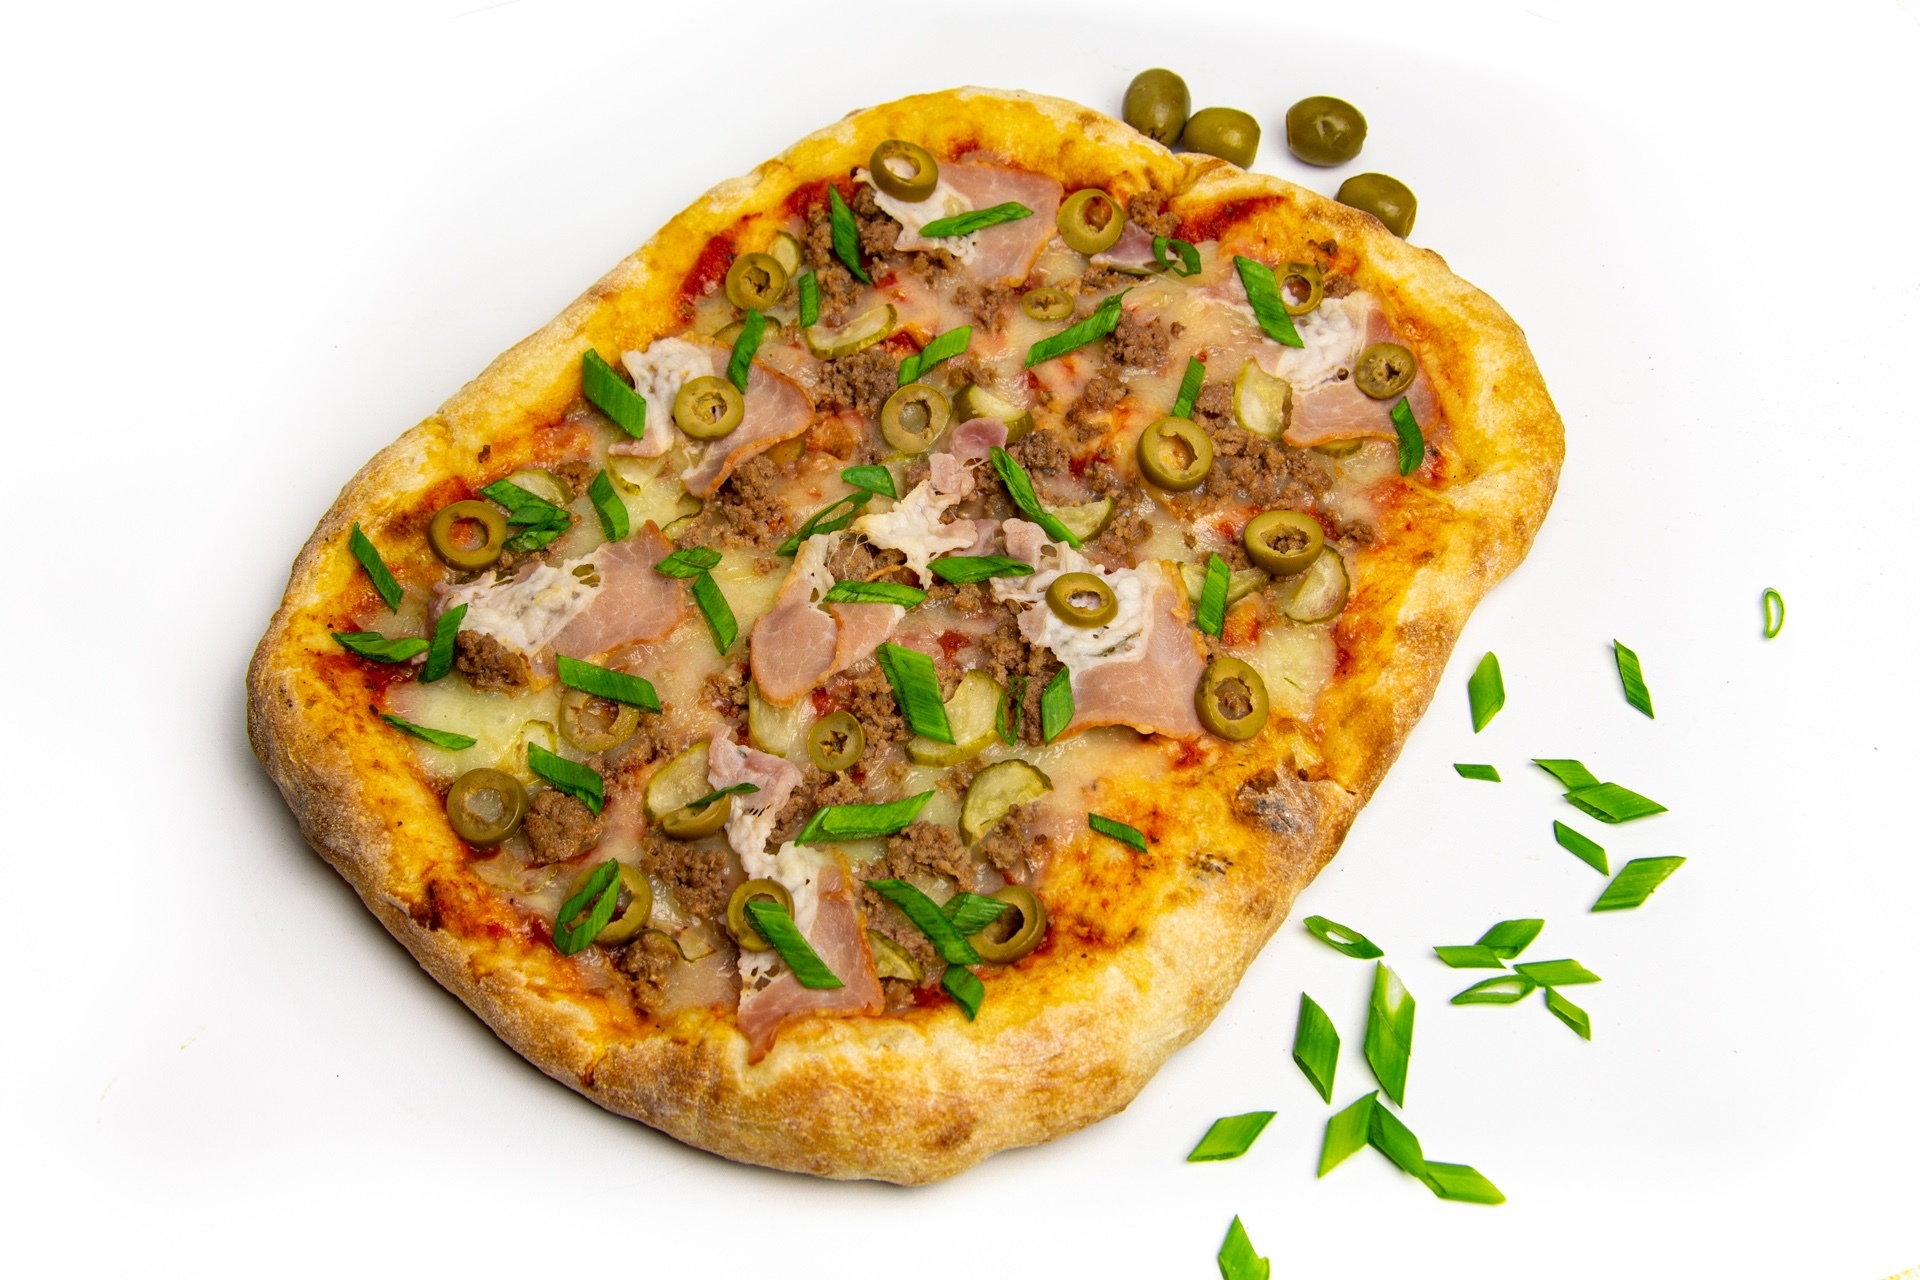 космическое питание сицилийская пицца фото 44